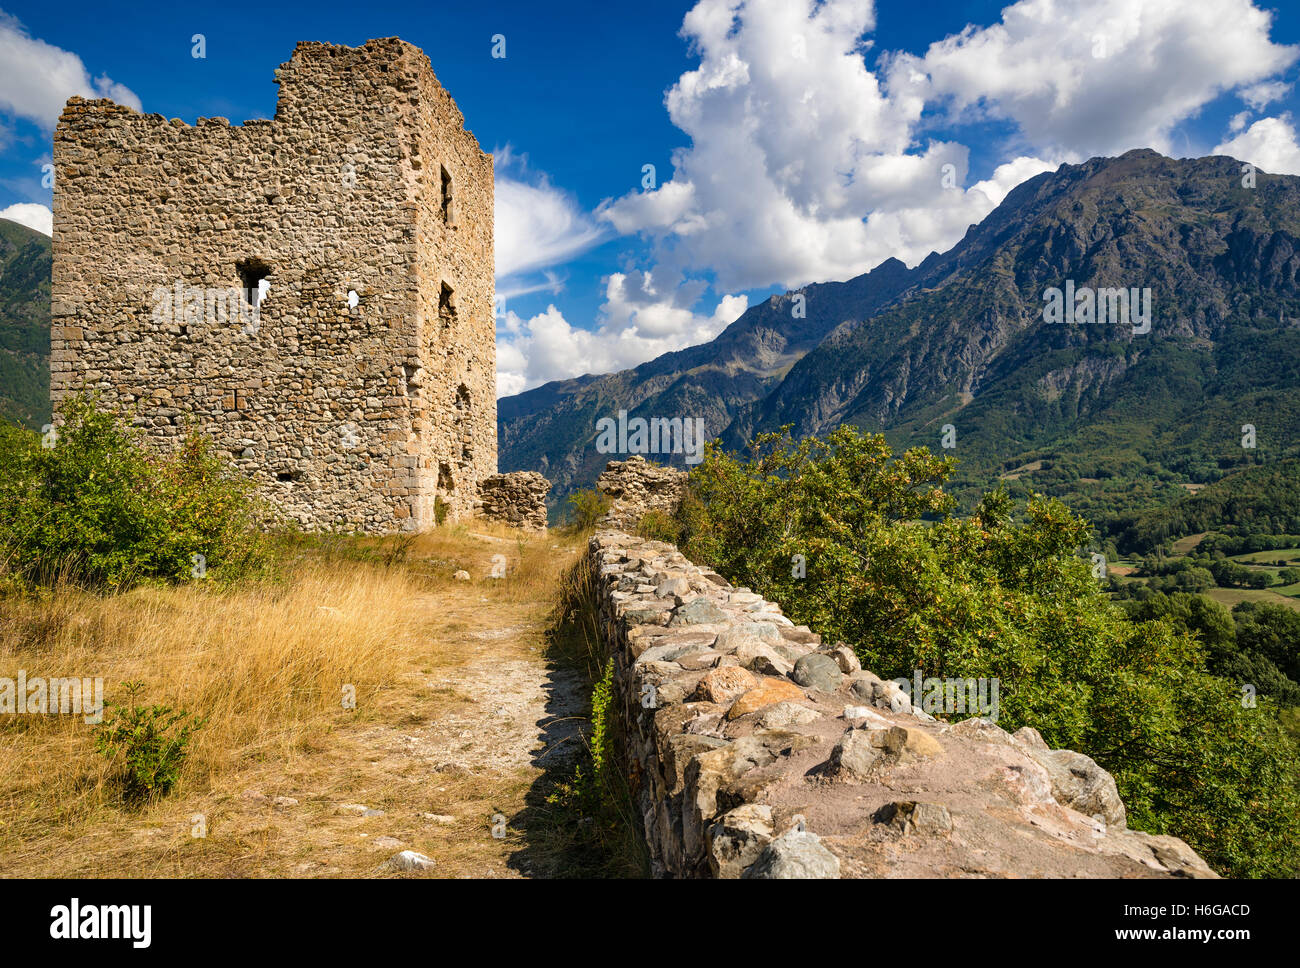 Ruines du château de lesdiguières ('Le Fort') et du Petit Chaillol pic de montagne en été. Le Valgaudemar, Alpes du Sud, France Banque D'Images